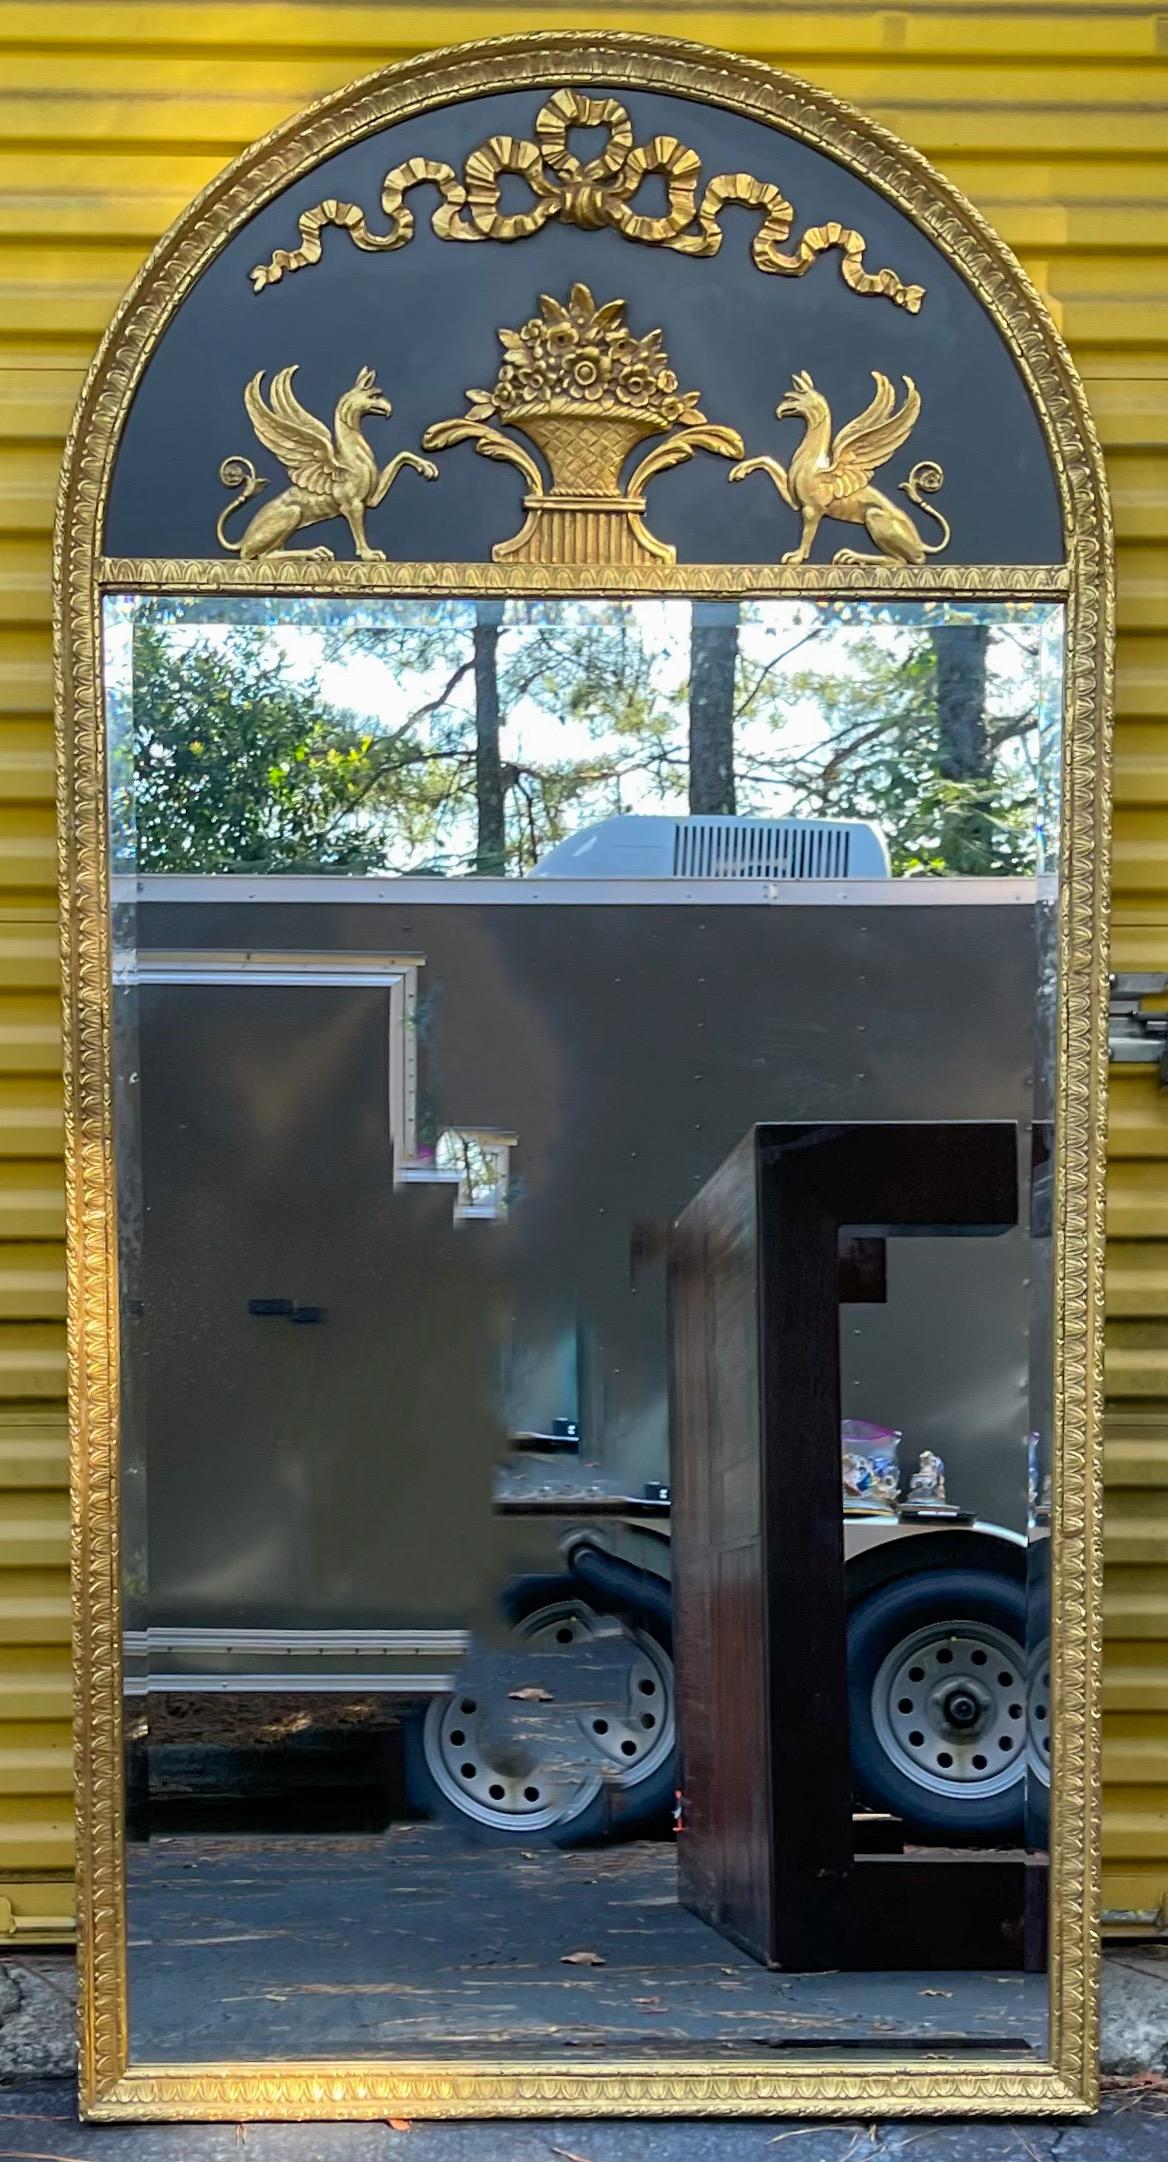 Dieser Spiegel setzt in jeder Einrichtung ein starkes Zeichen! Es handelt sich um einen großformatigen Trumeau-Spiegel im neoklassizistischen Stil. Sie stammt aus der zweiten Hälfte des 20. Jahrhunderts und ist in sehr gutem Zustand. Es fühlt sich